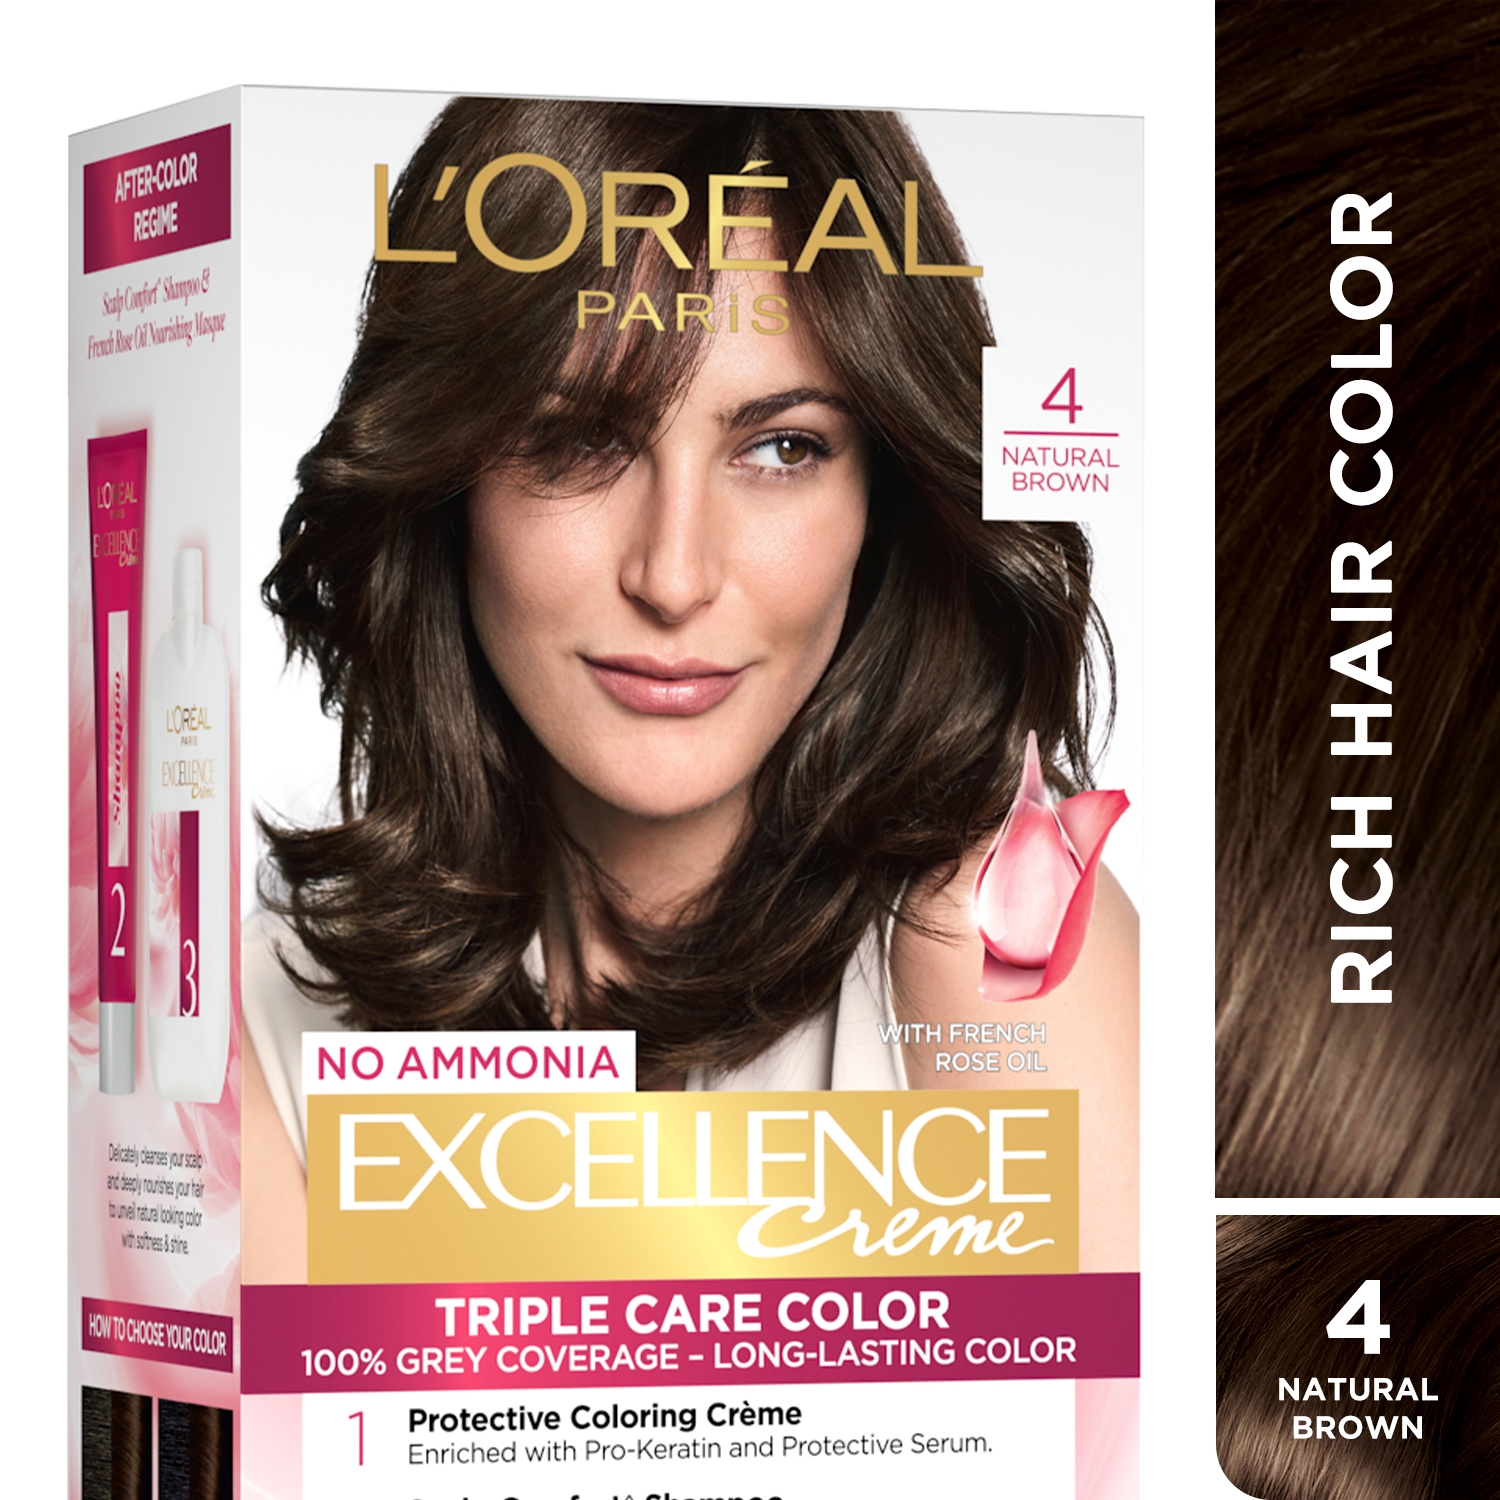 L'Oreal Paris | L'Oreal Paris Excellence Creme Hair Color, 4 Natural Brown -72ml+100g